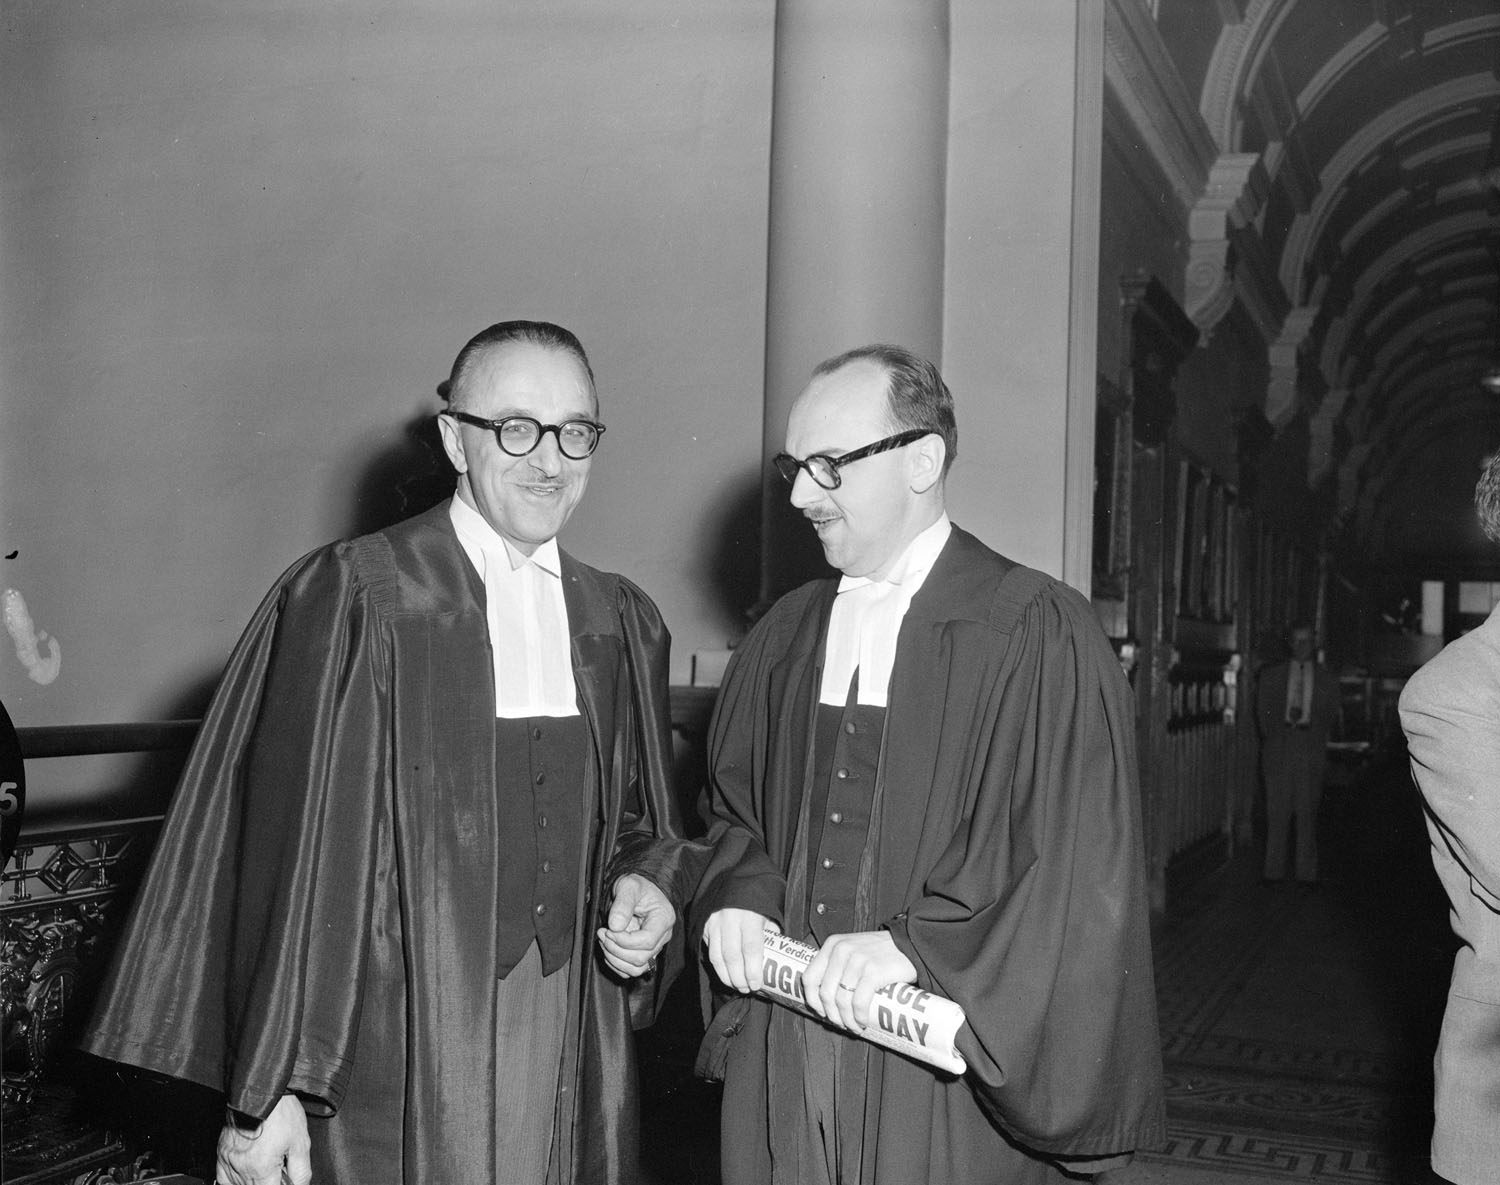 Deux hommes à lunettes portant la toge d’avocat se tiennent debout dans une salle non identifiée. L’homme de droite tient un journal dans ses mains.